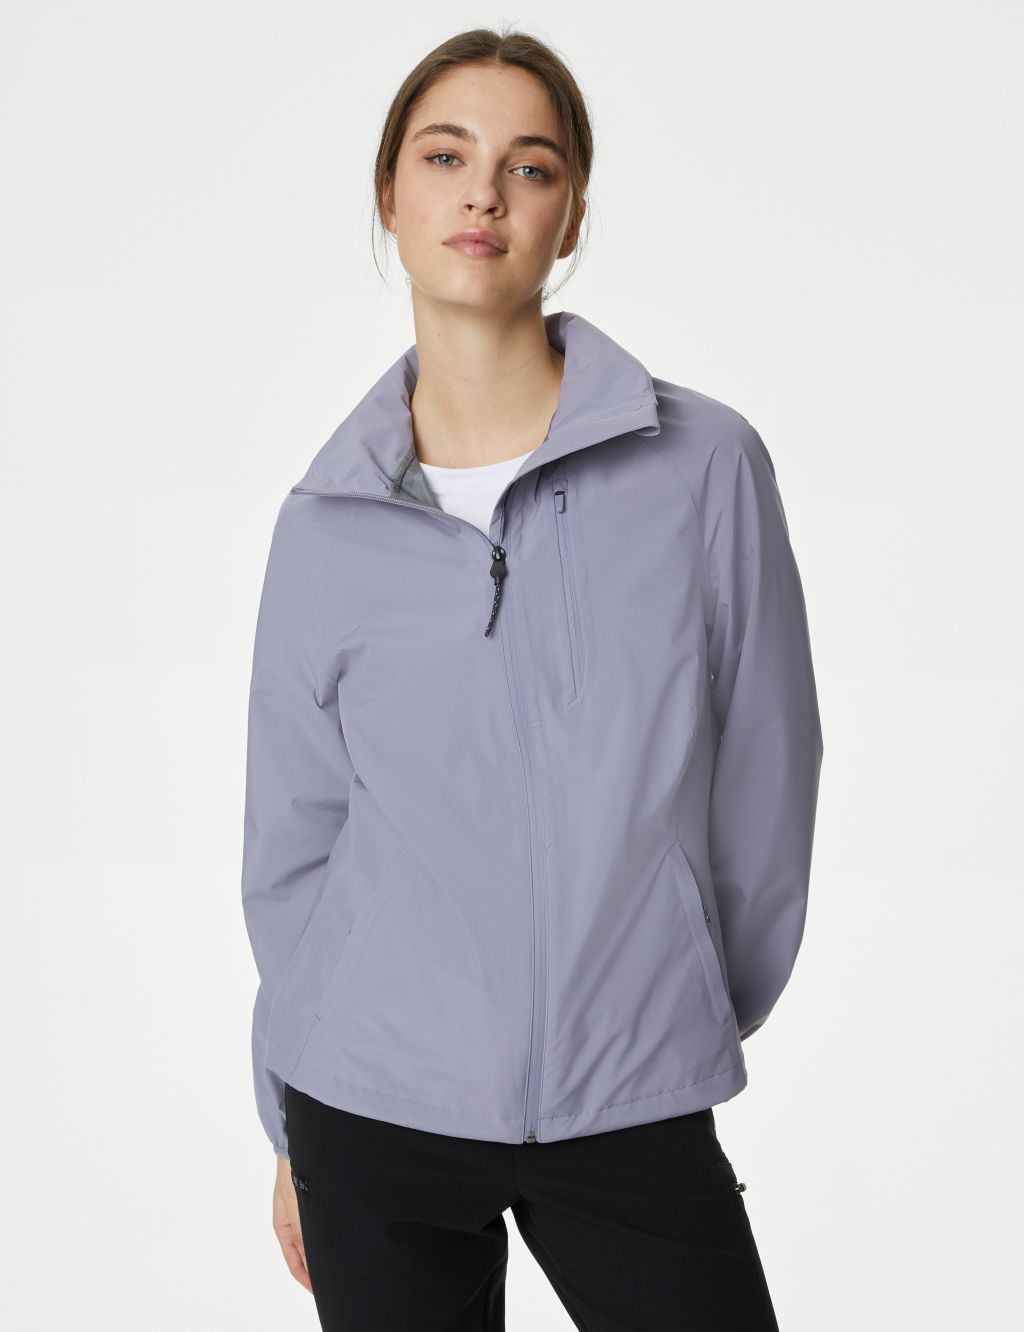 Waterproof Hooded Sports Jacket with Stormwear™ Ultra